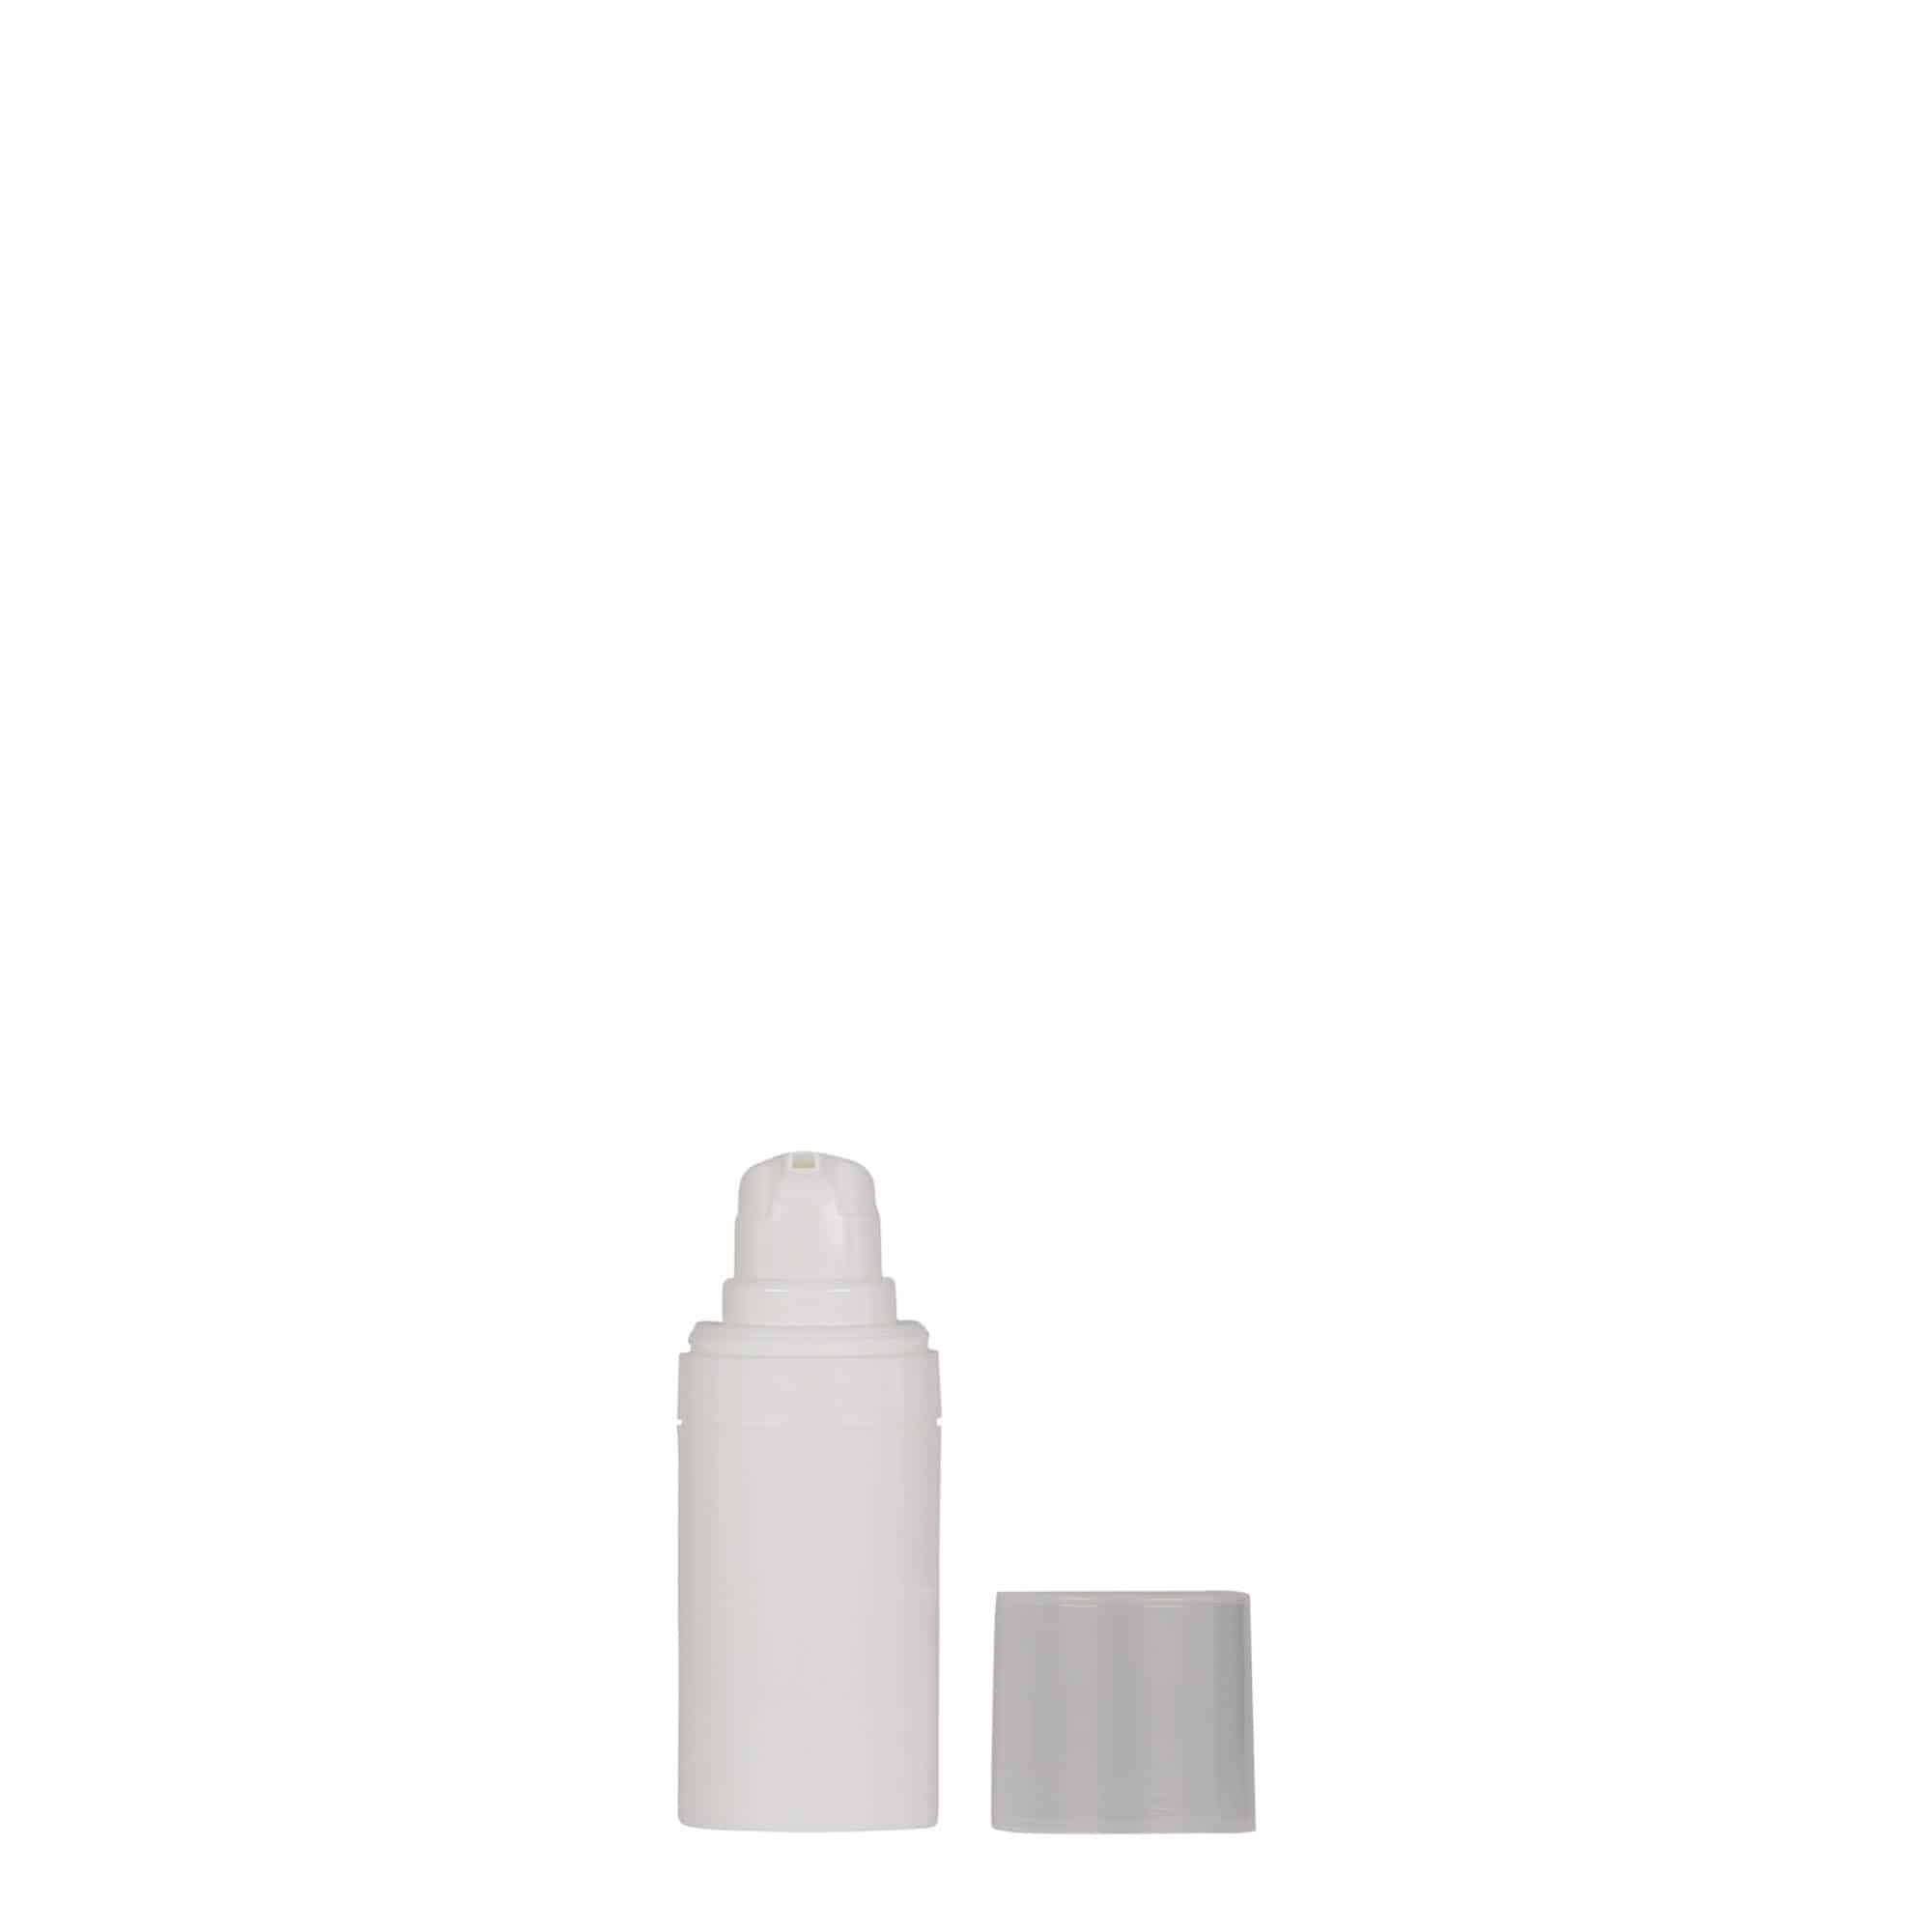 Bezvzduchový dávkovač 15 ml 'Micro', plast PP, bílý